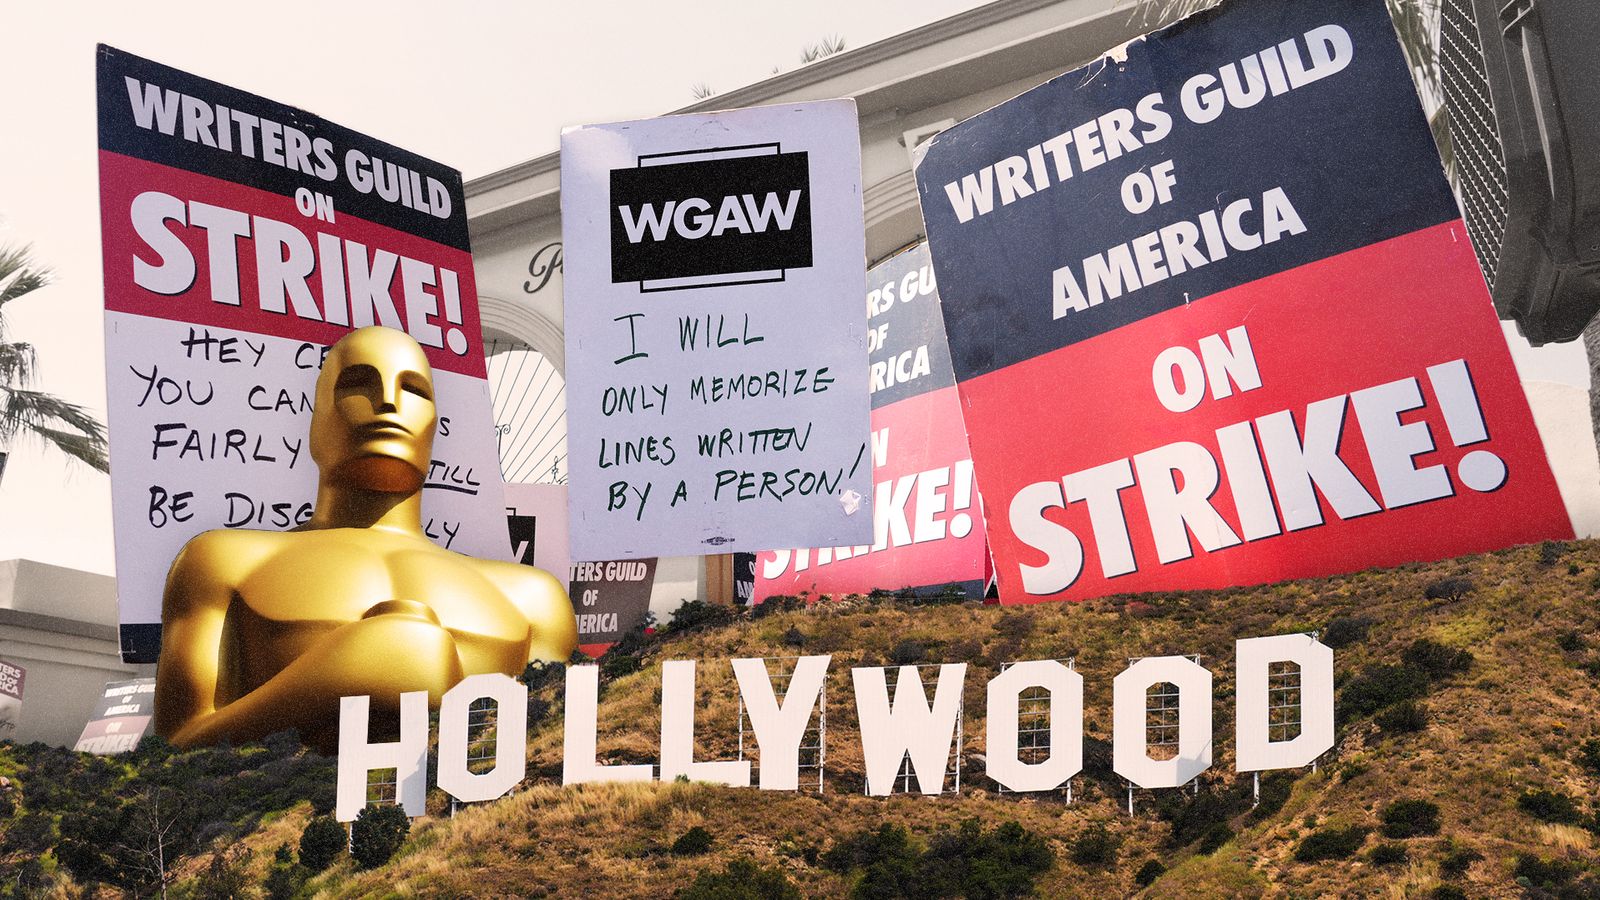 Cuộc đàm phán mở đường cho việc chấm dứt đình công ở Hollywood  - Ảnh 3.